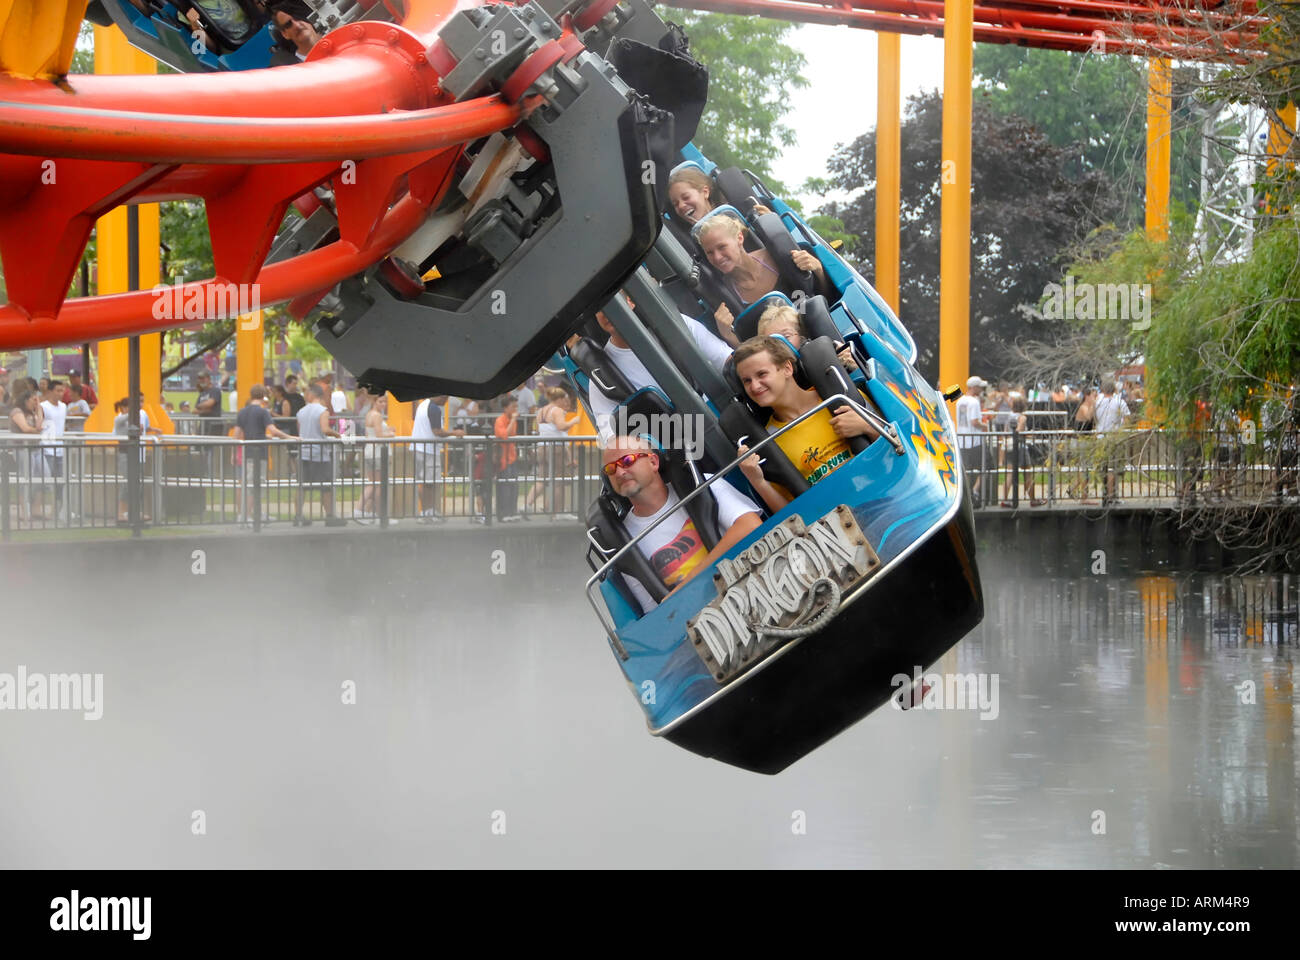 Cedar Point Amusement Park at Sandusky Ohio OH Stock Photo